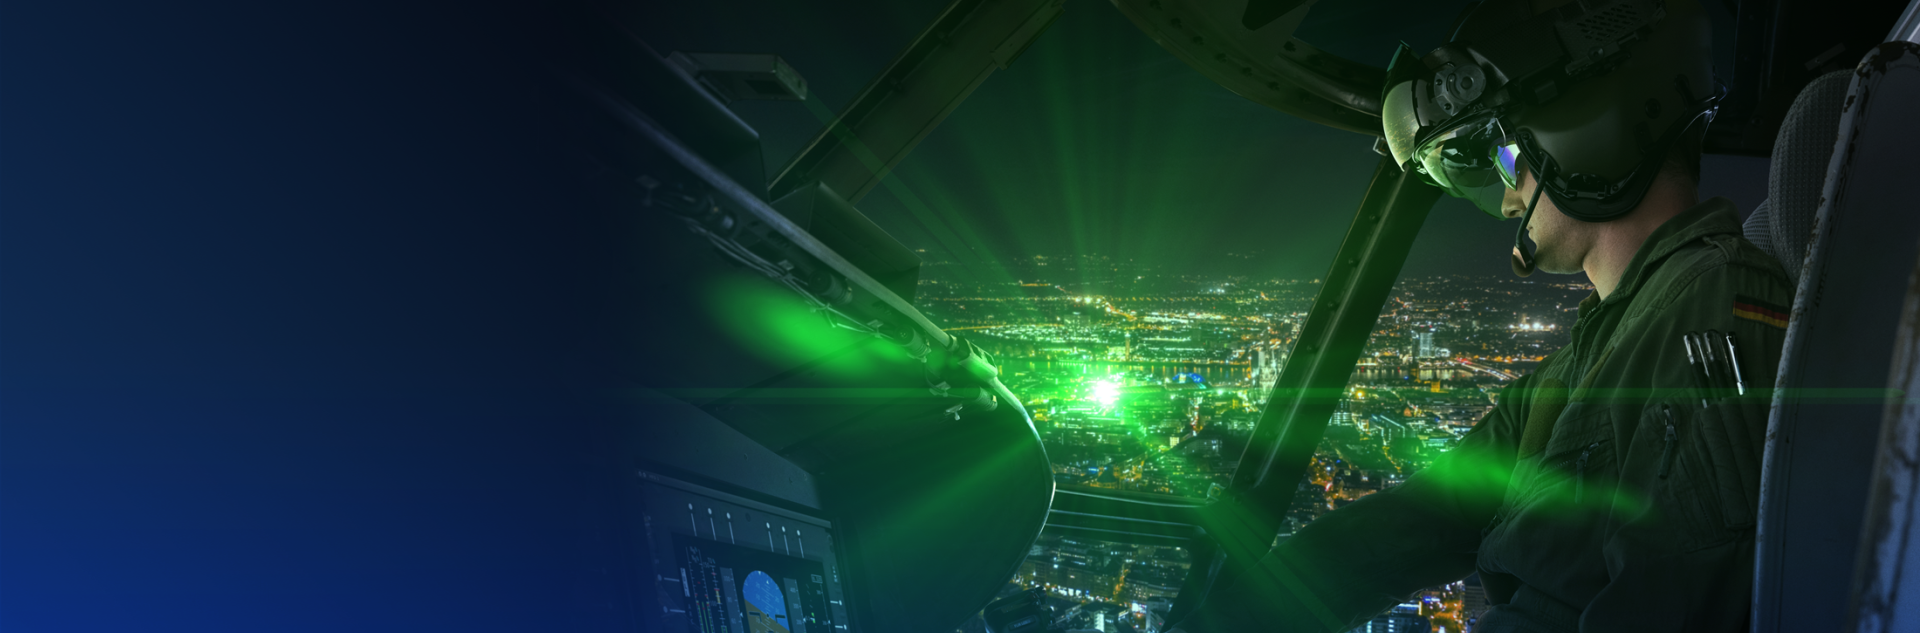 Innovativer Laserschutz für Piloten und Besatzung - visAIRion bei ESG